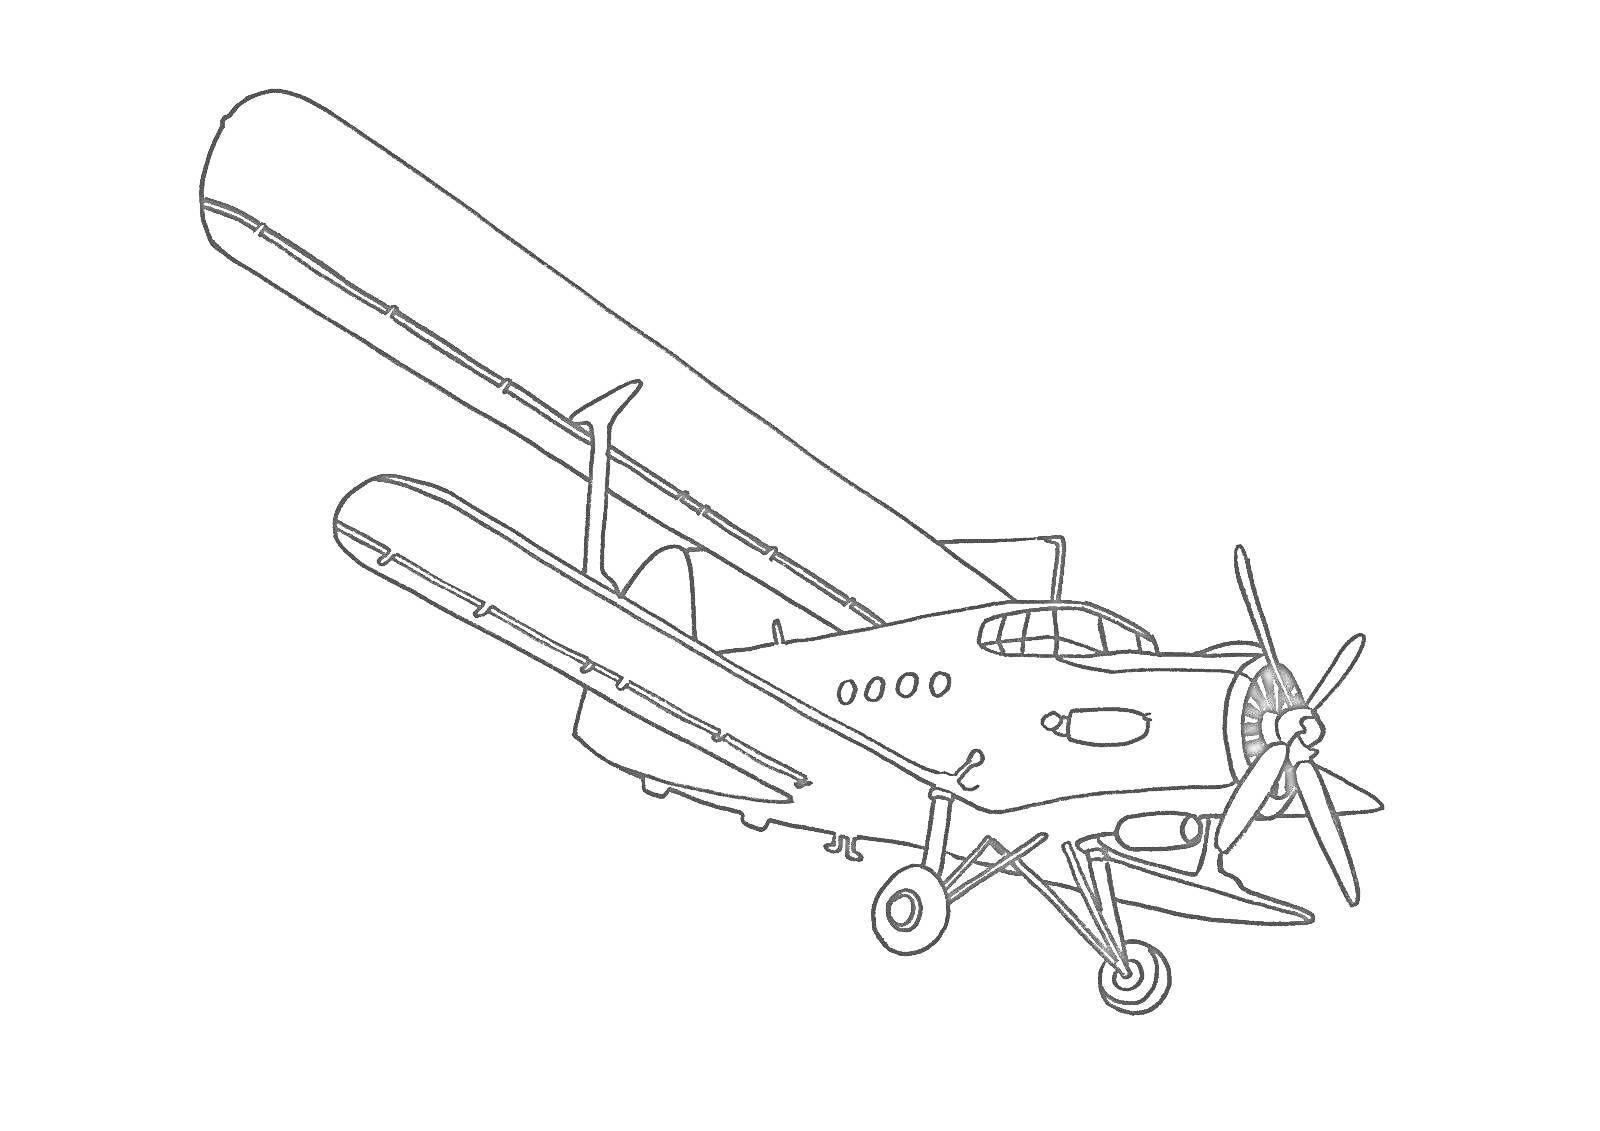 Винтовой самолет с шасси и верхним крылом